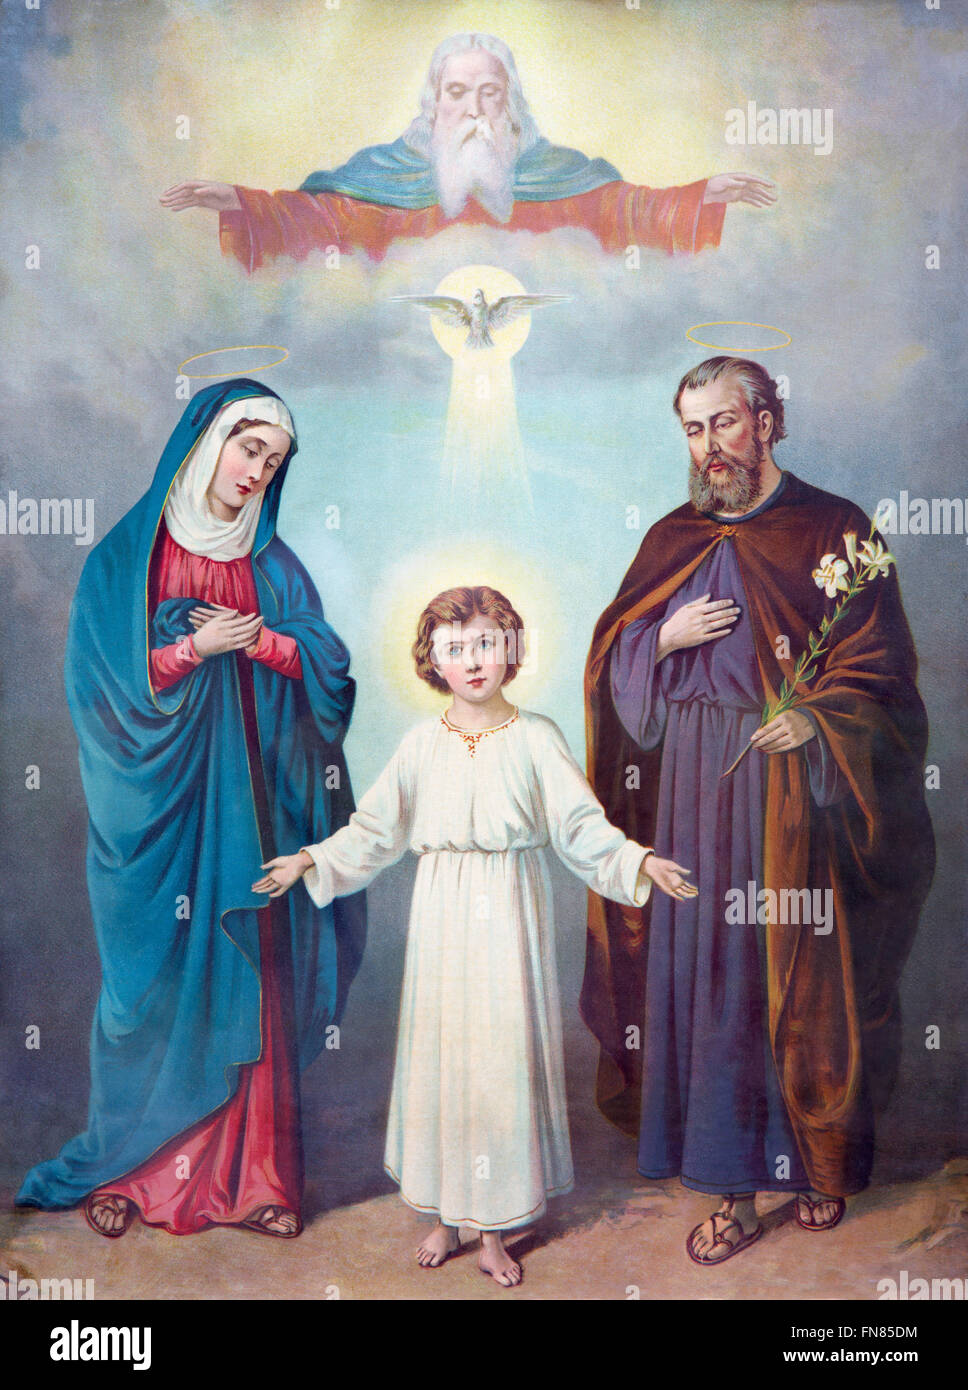 SEBECHLEBY, Slovacchia - 27 febbraio 2016: tipica immagine cattolica della Sacra Famiglia e la Trinità. Foto Stock